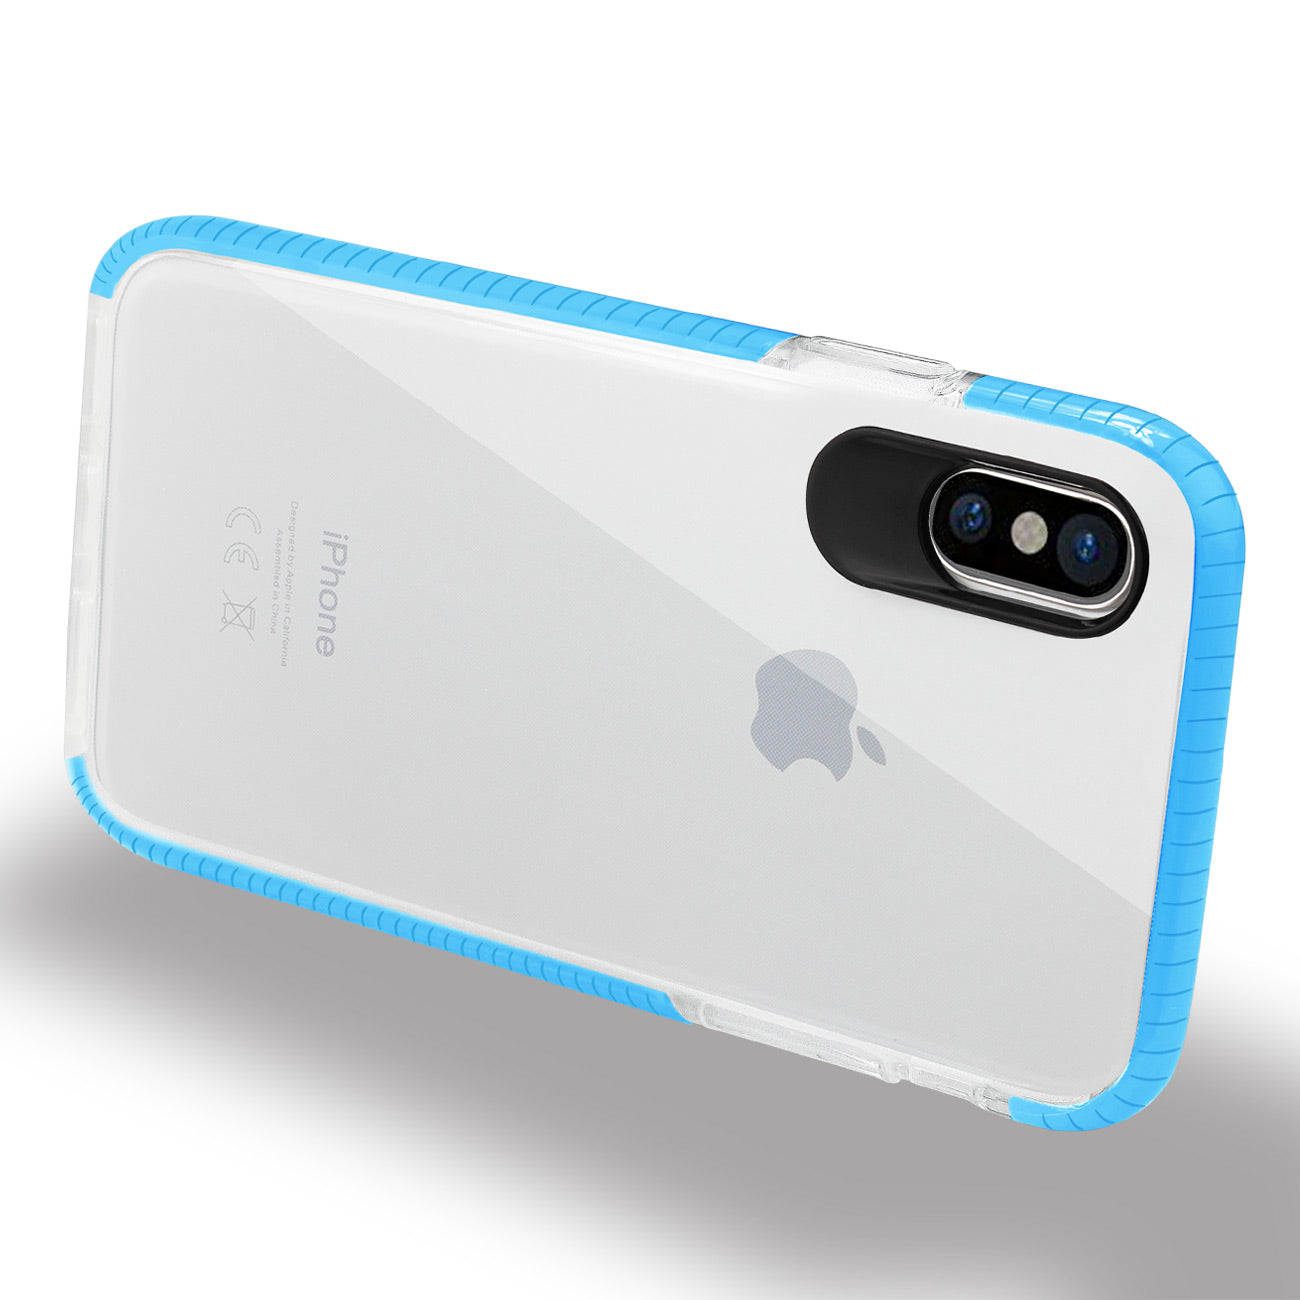 REIKO iPhone X/iPhone XS SOFT TRANSPARENT TPU CASE IN CLEAR BLUE